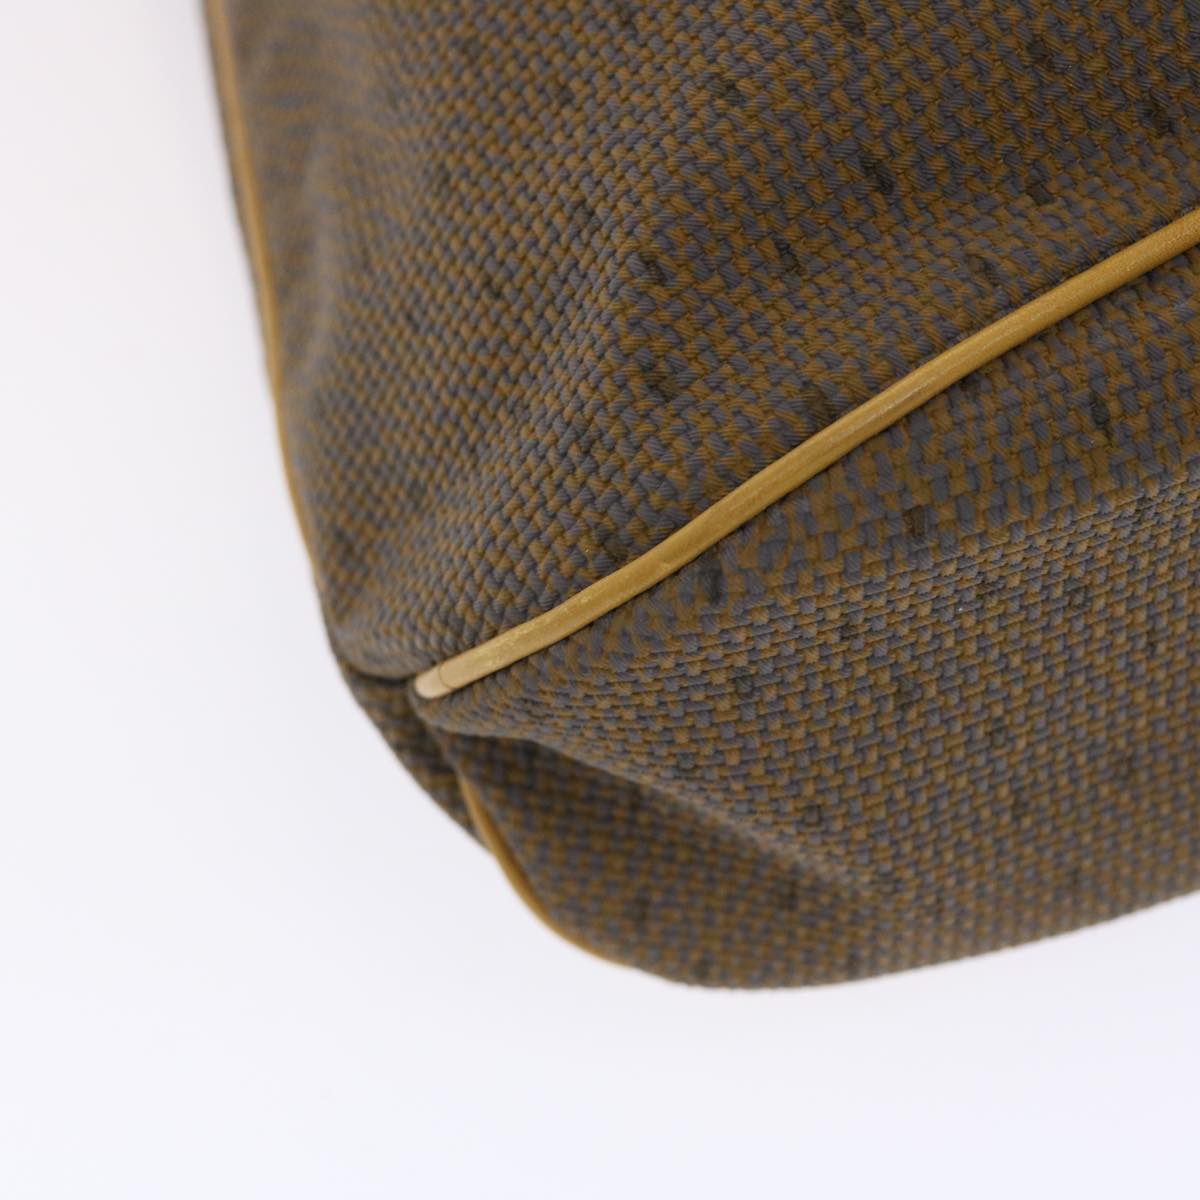 SAINT LAURENT Shoulder Bag PVC Leather Brown Auth ep1300